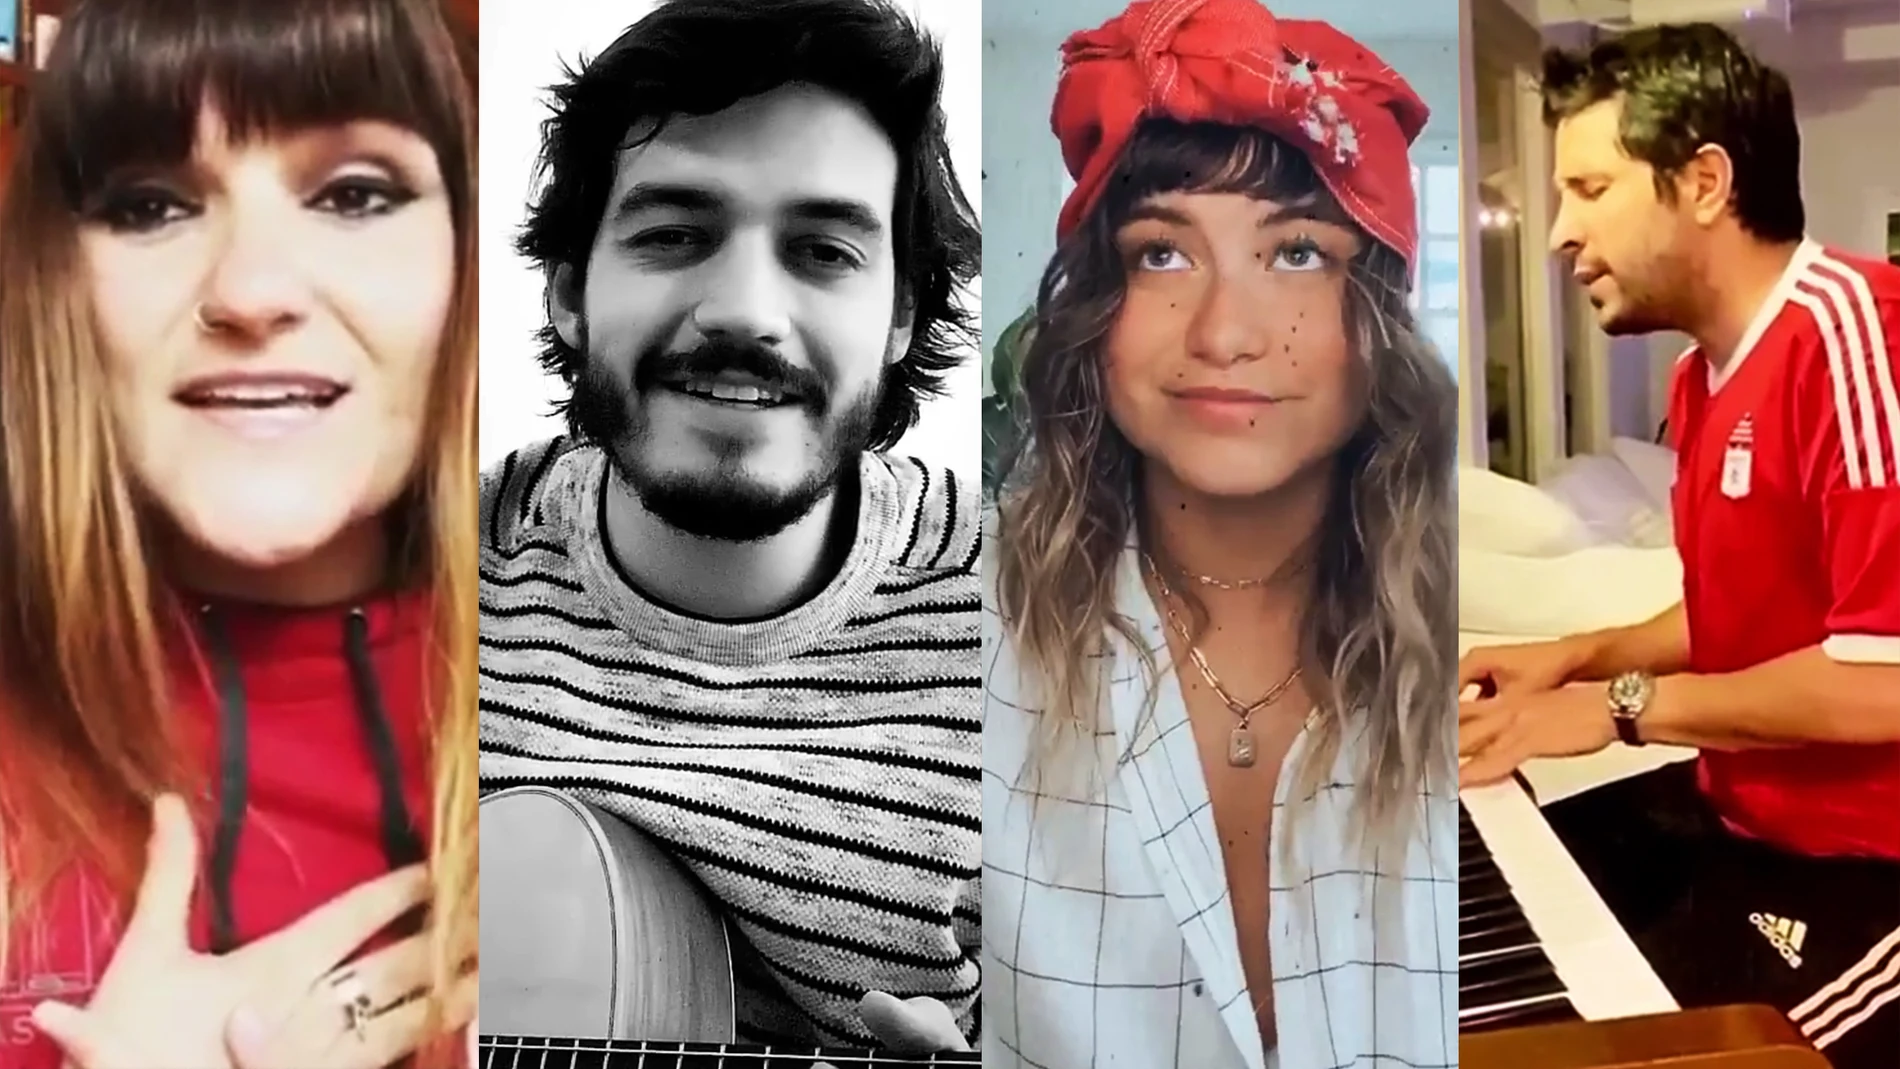 Rozalén, Morat, Sofía Reyes, Greeicy, Cali y El Dandee... así son las versiones de los artistas que se unen al #SiTúLaQuieresChallenge